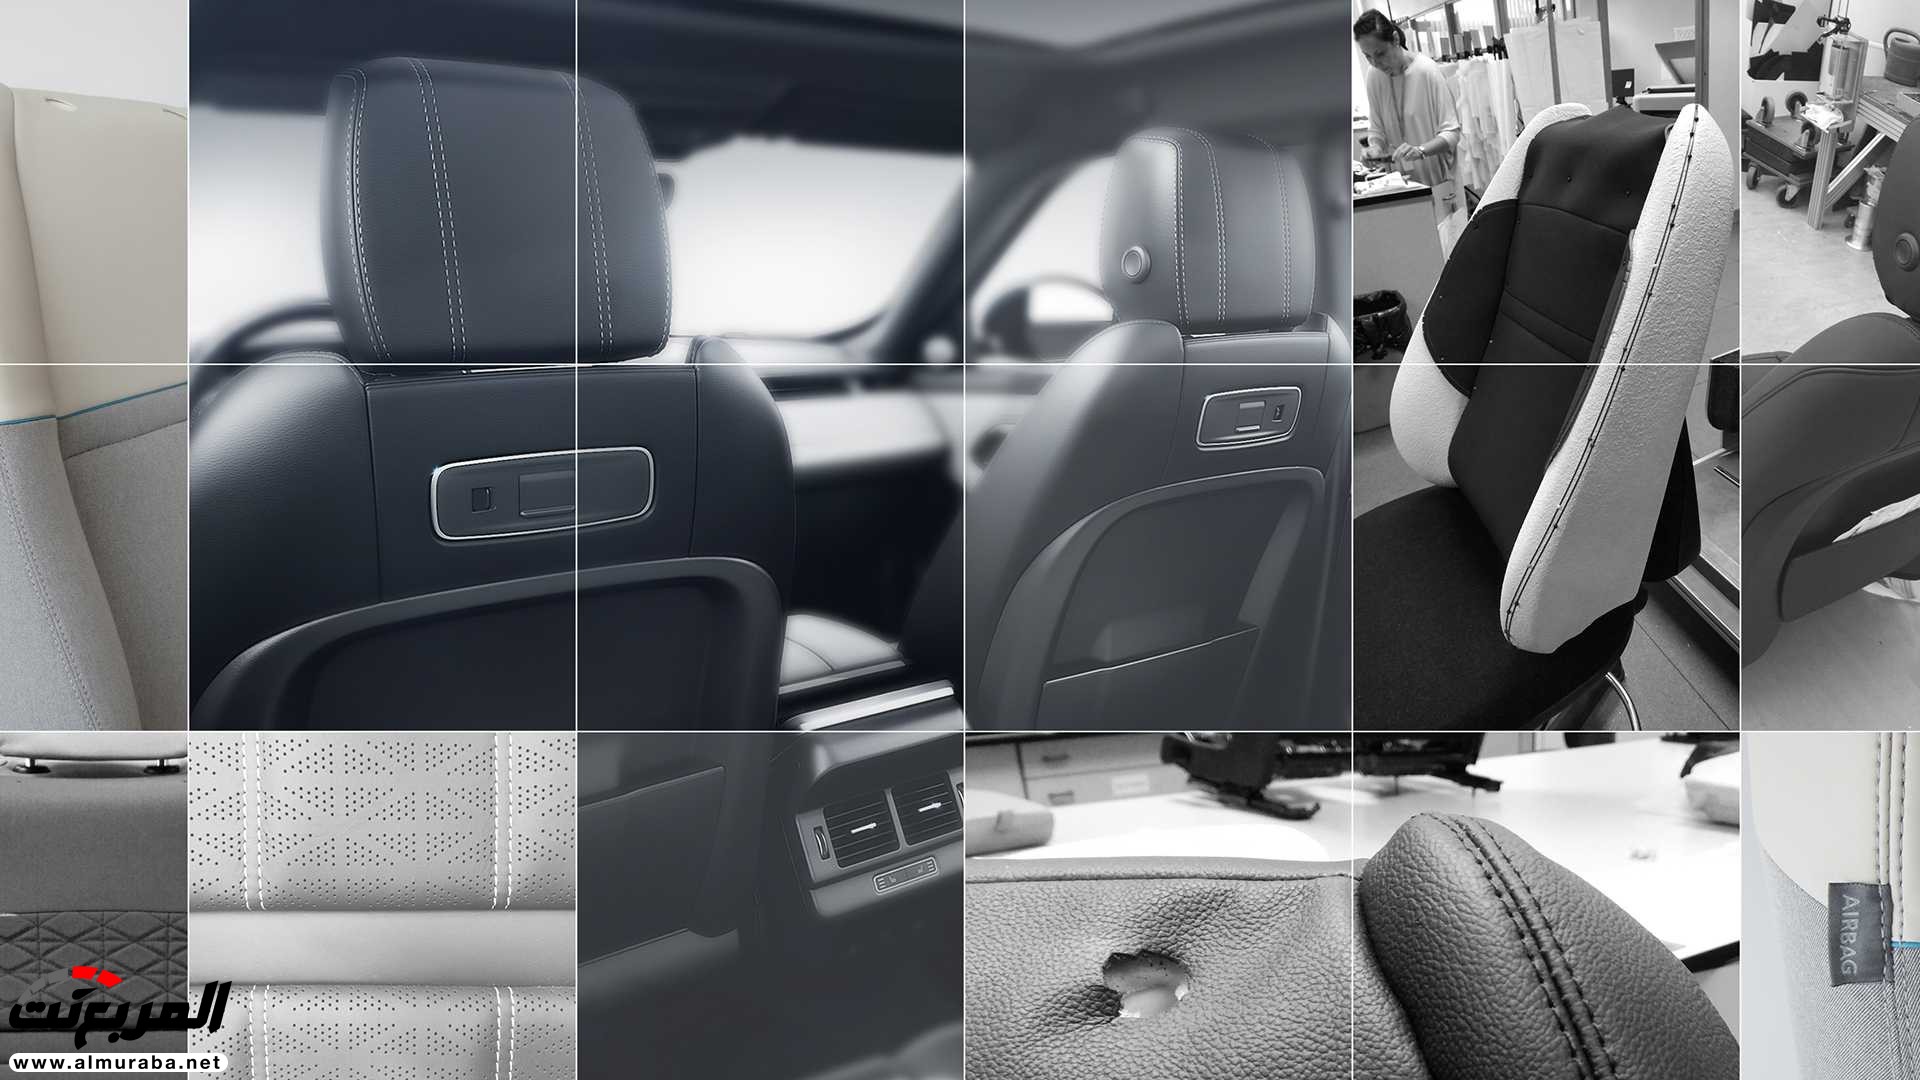 اهم 7 معلومات عن رنج روفر ايفوك 2020 الجديدة كلياً Range Rover Evoque 368